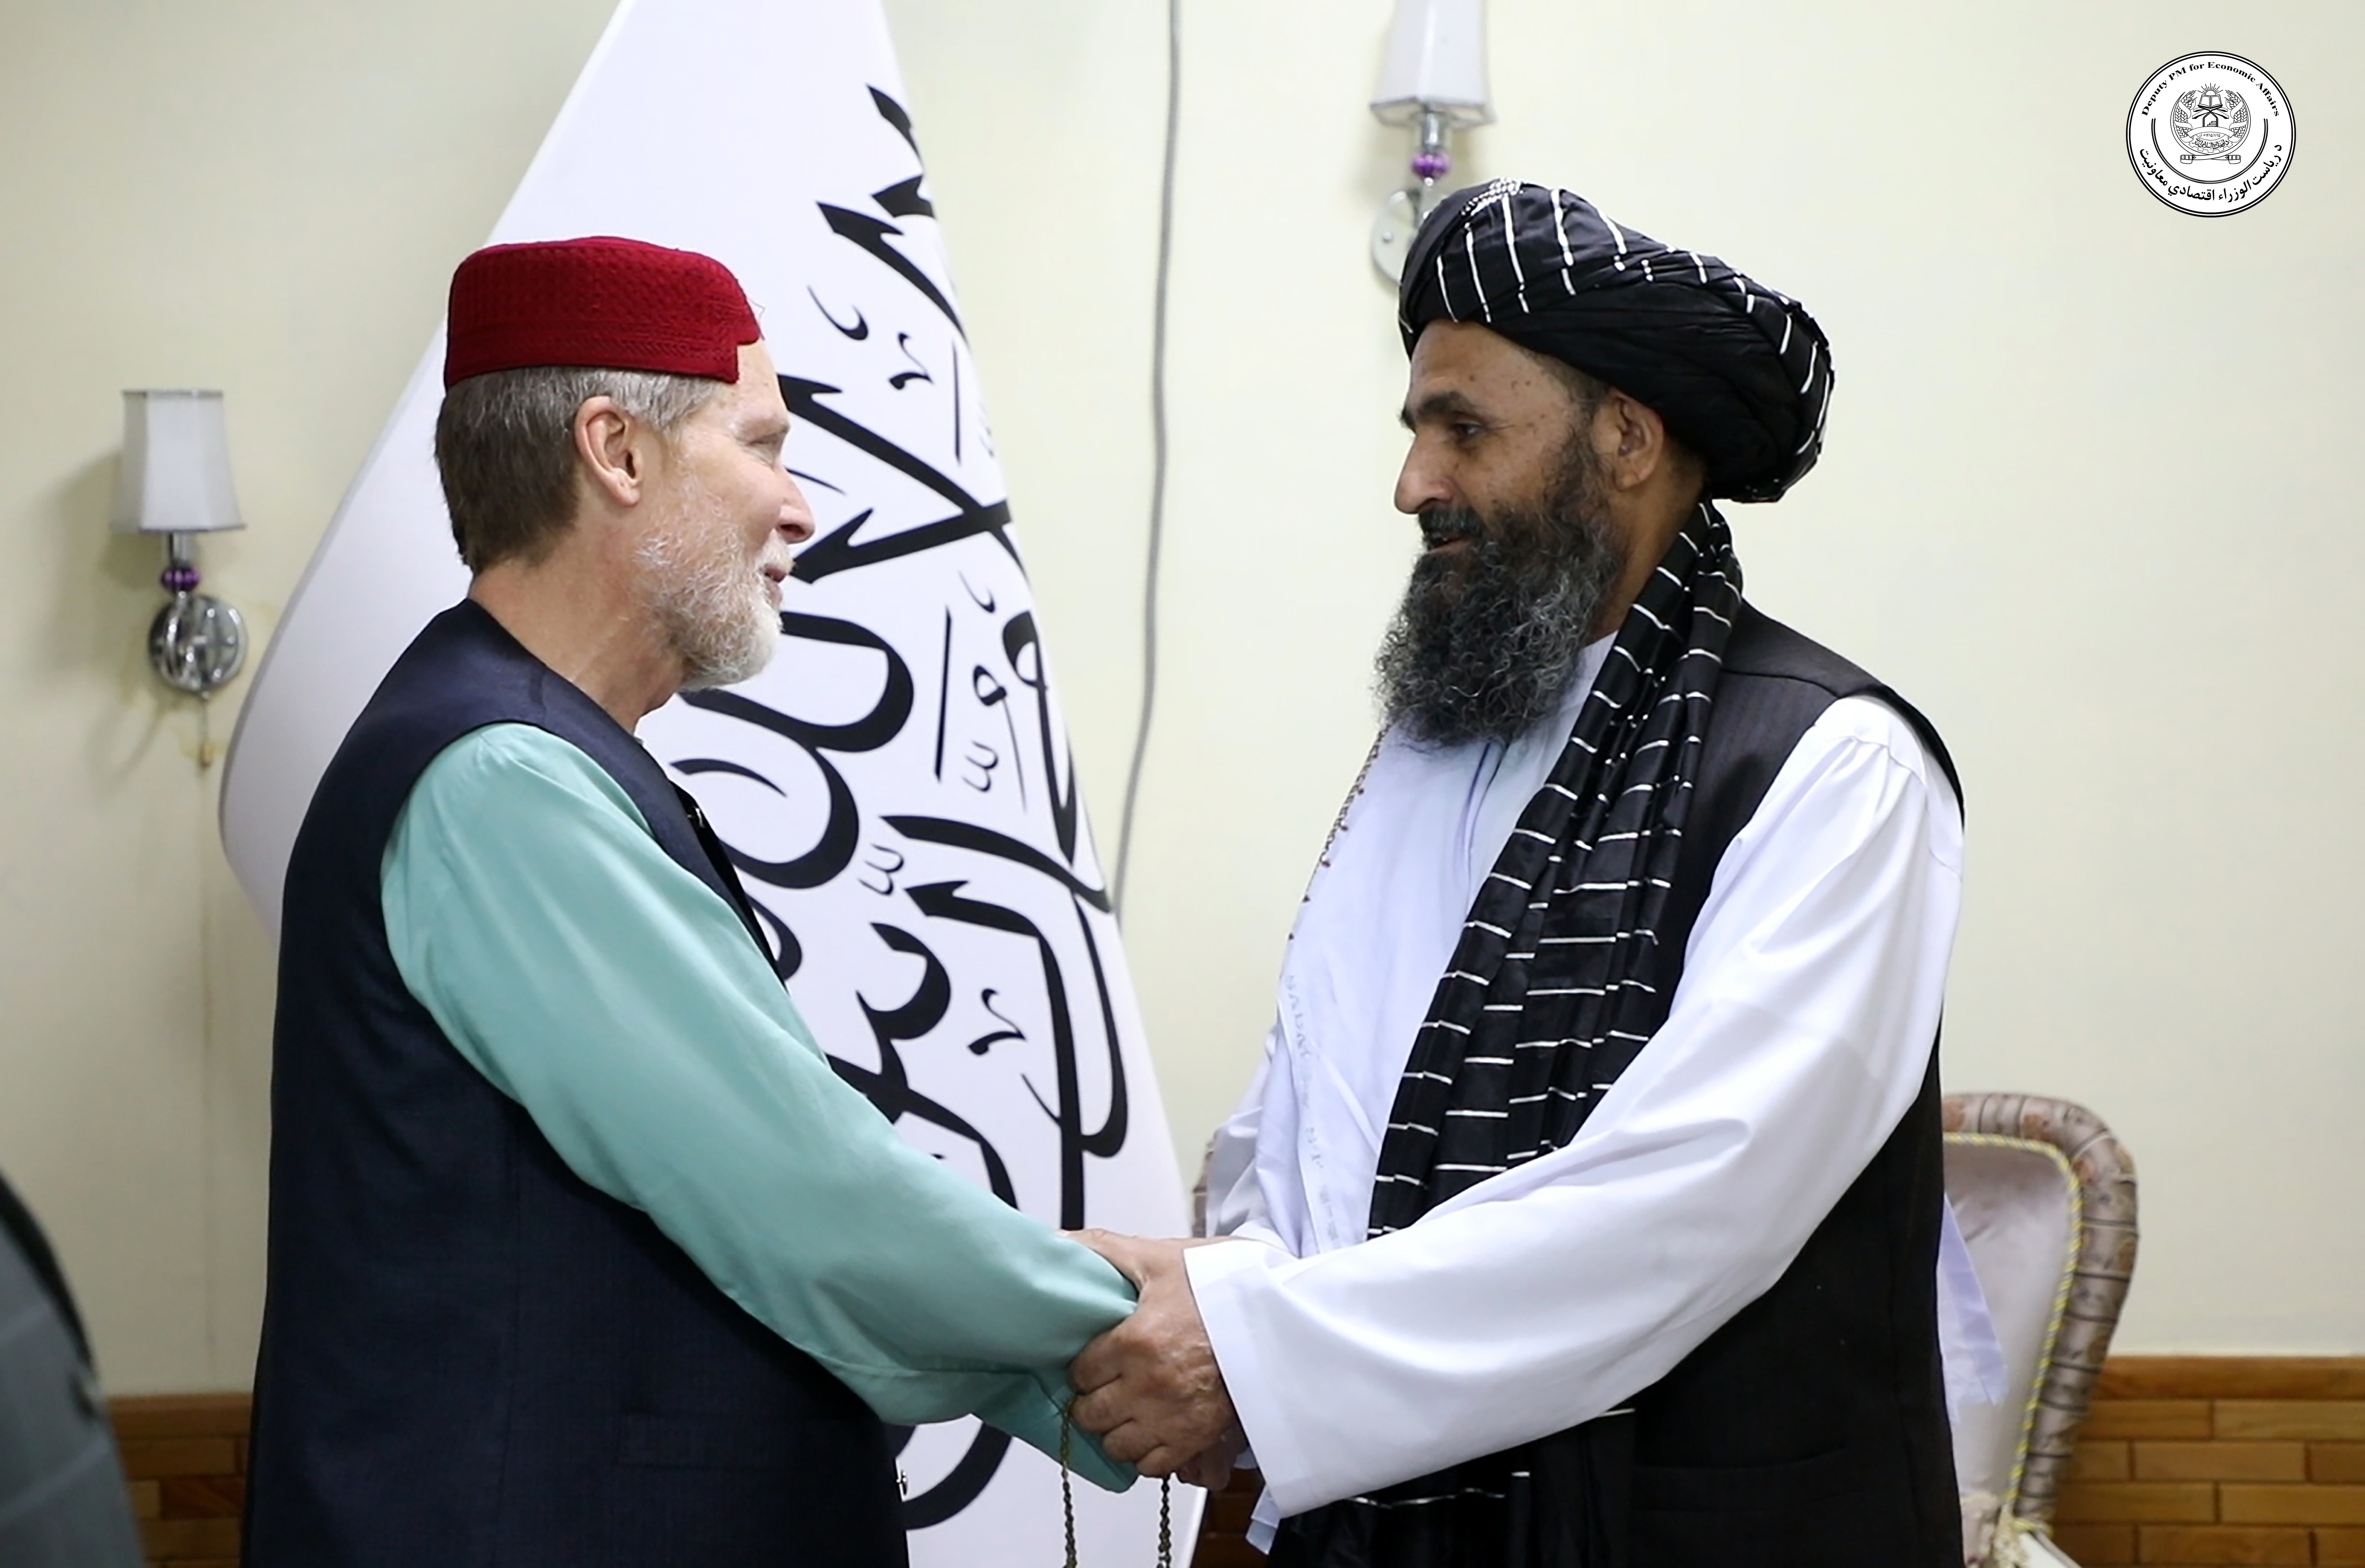 Hajji Mullah Abdul Ghani Beradar Akhund met with Jebrael Omar